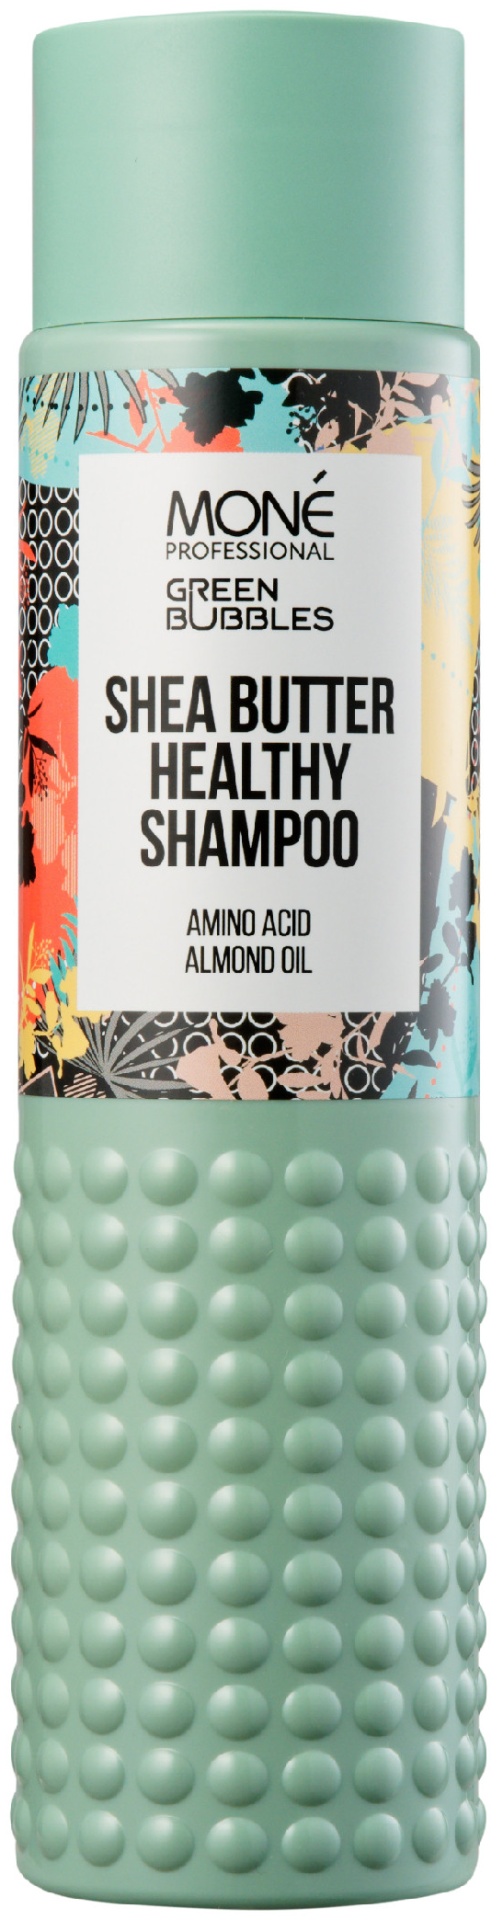 Mone bubbles. Mone professional лак. Maui шампунь. Mone professional Green Bubbles Shea Butter healthy Shampoo Amino acid Almond Oil.